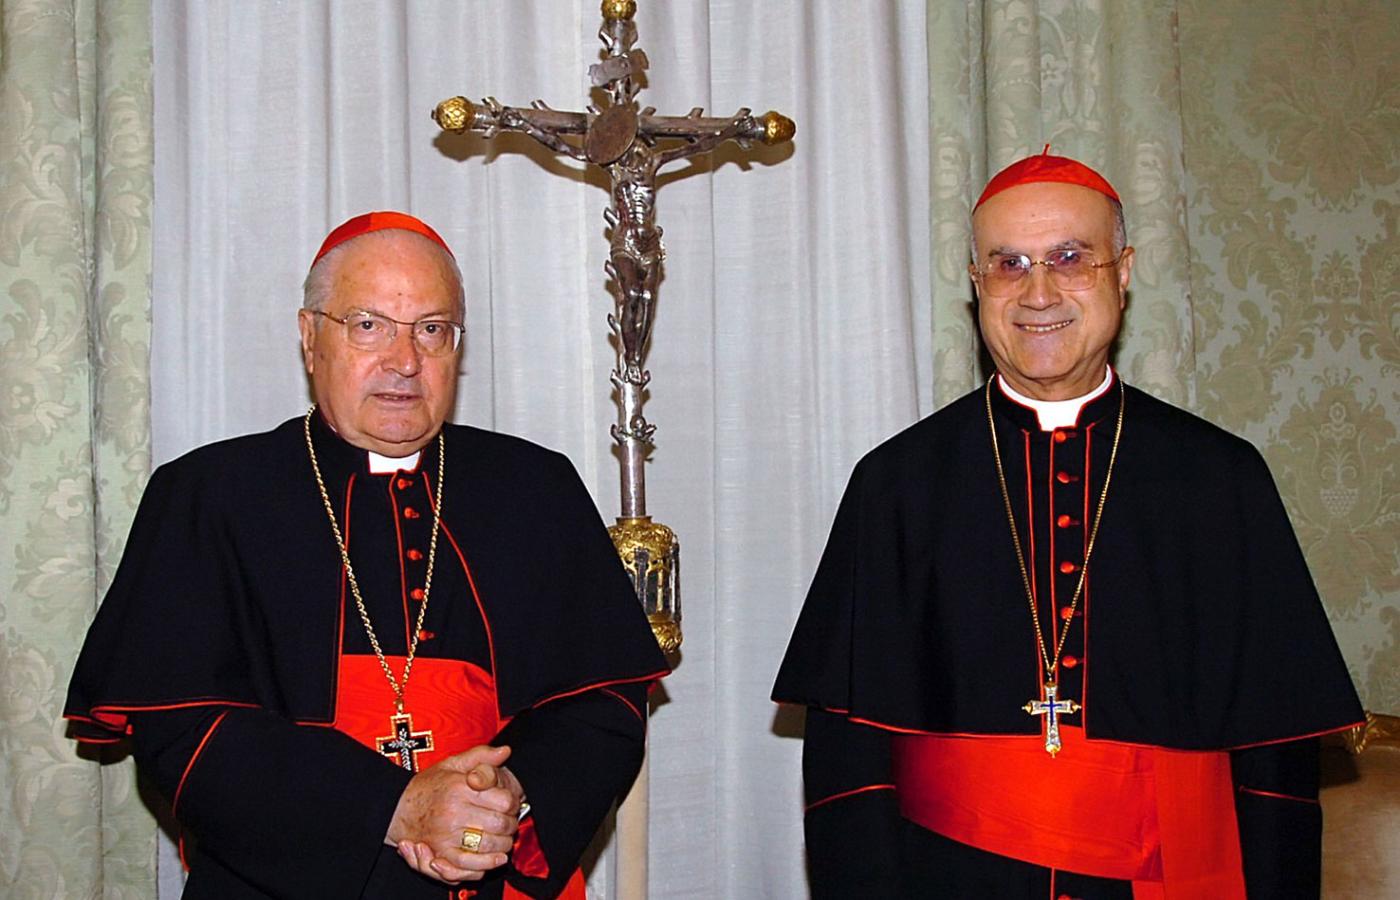 Angelo Sodano i Tarcisio Bertone - podwójna głowa Kościoła w czasie bezkrólewia.